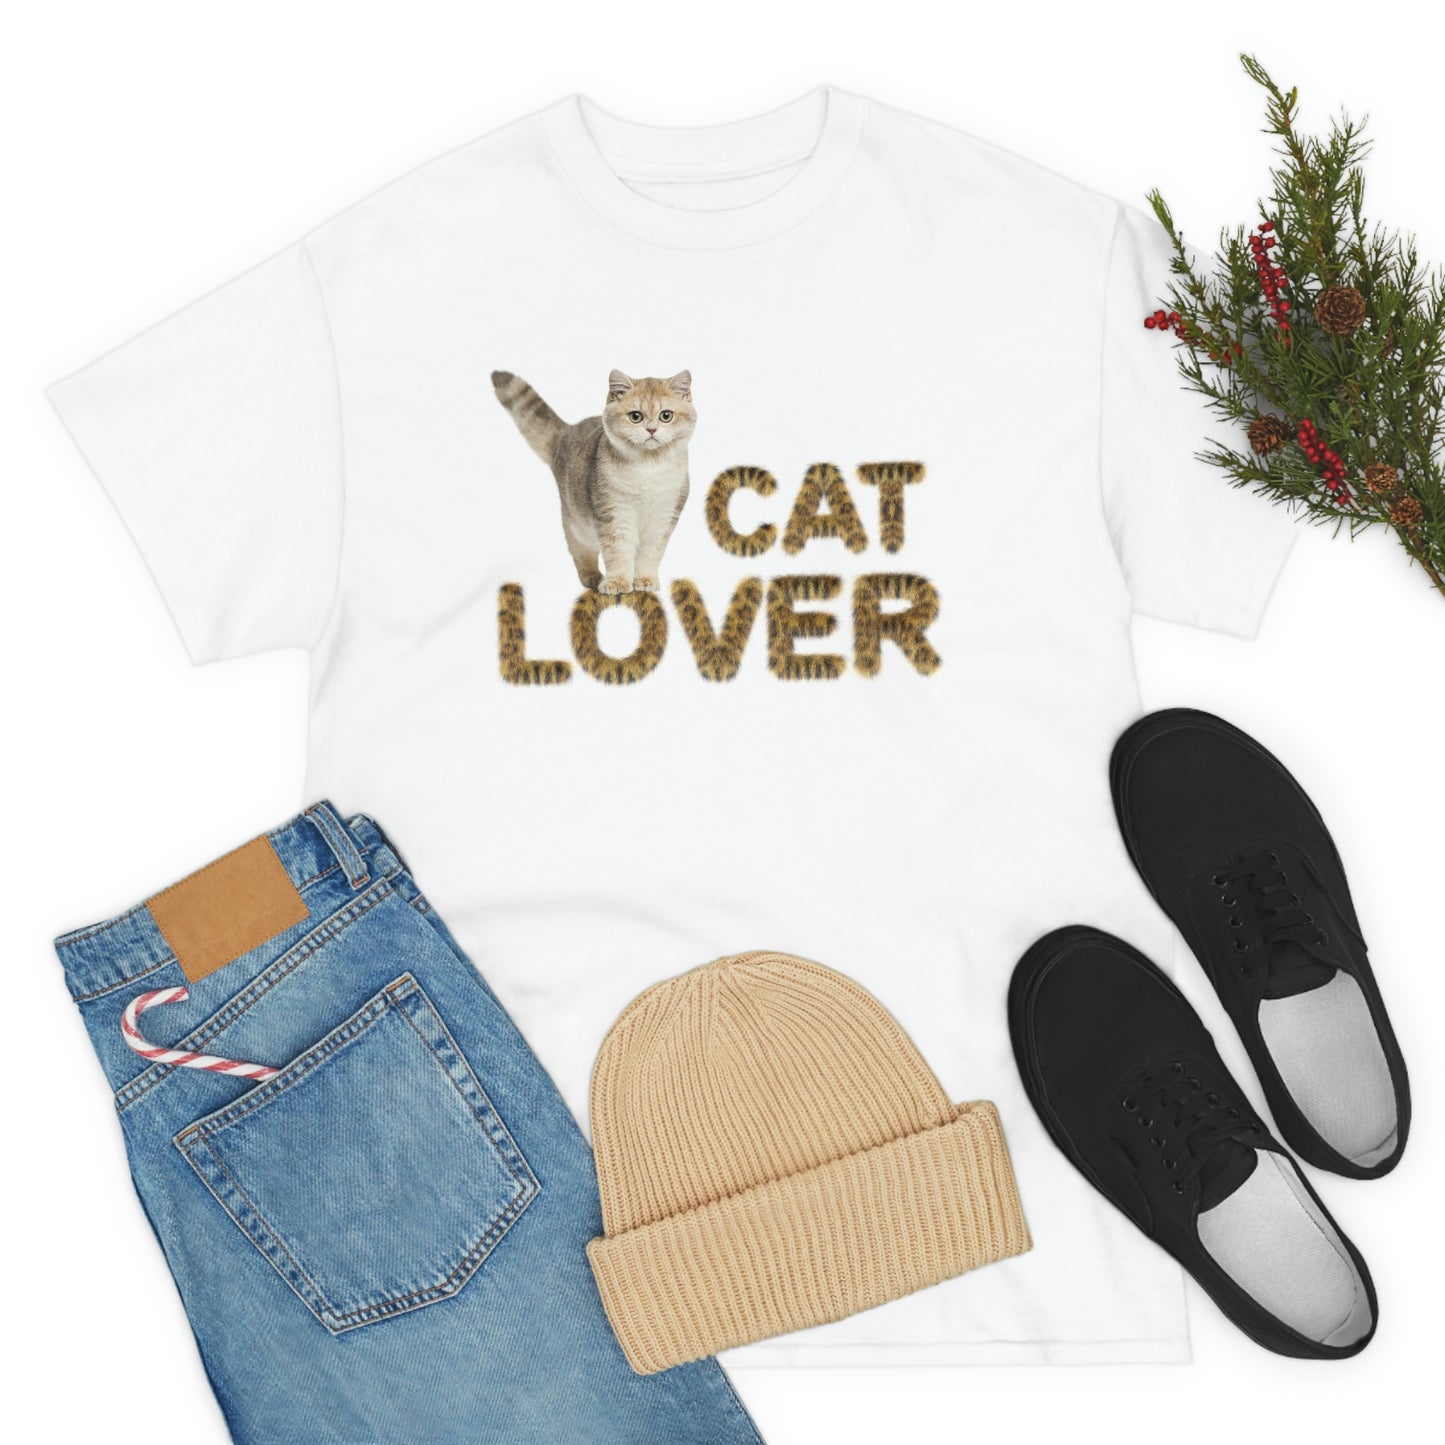 Cat Lover cute kitten (cat) design Graphic tee shirt